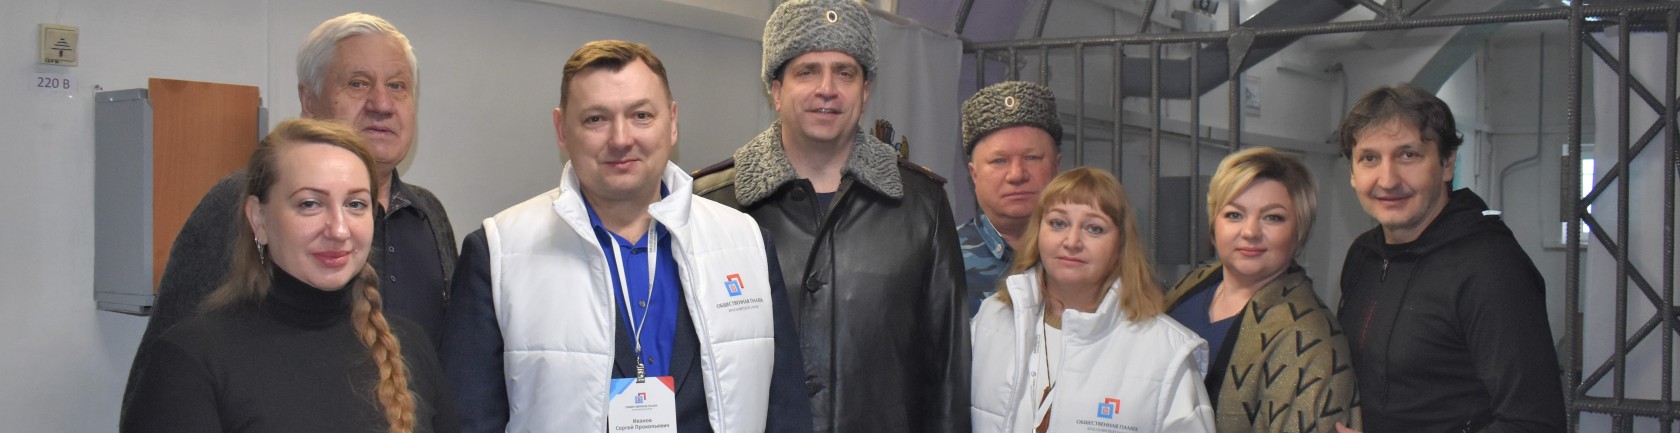 Общественники проверили ход голосования в следственном изоляторе Красноярска